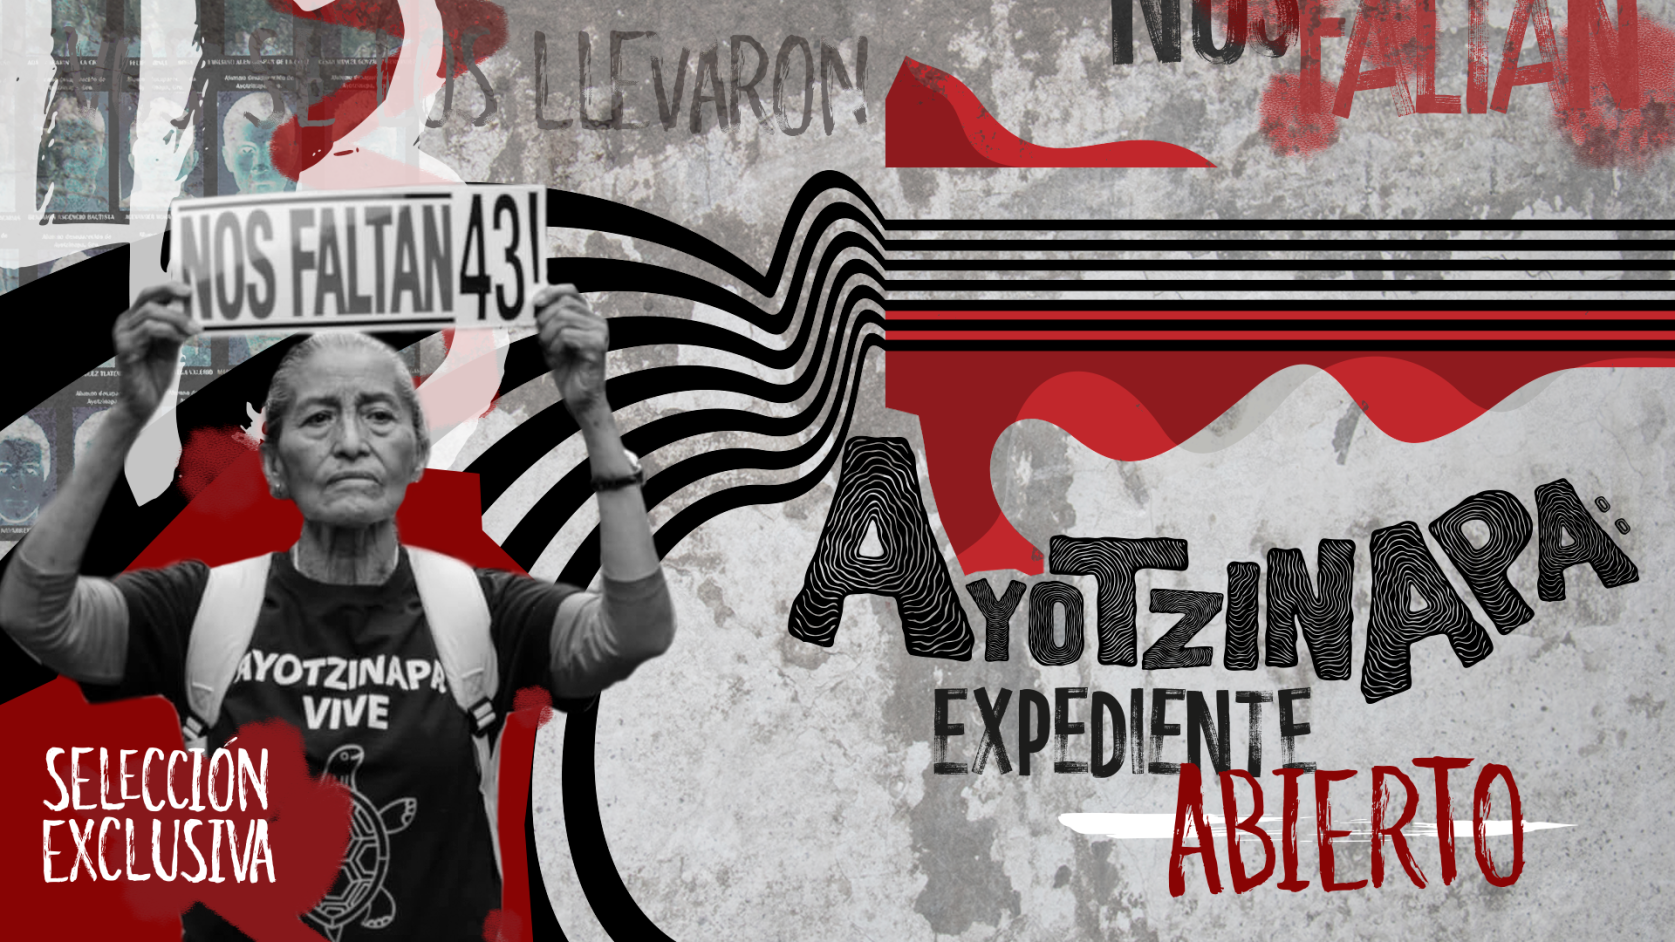 Ayotzinapa: Expediente Abierto